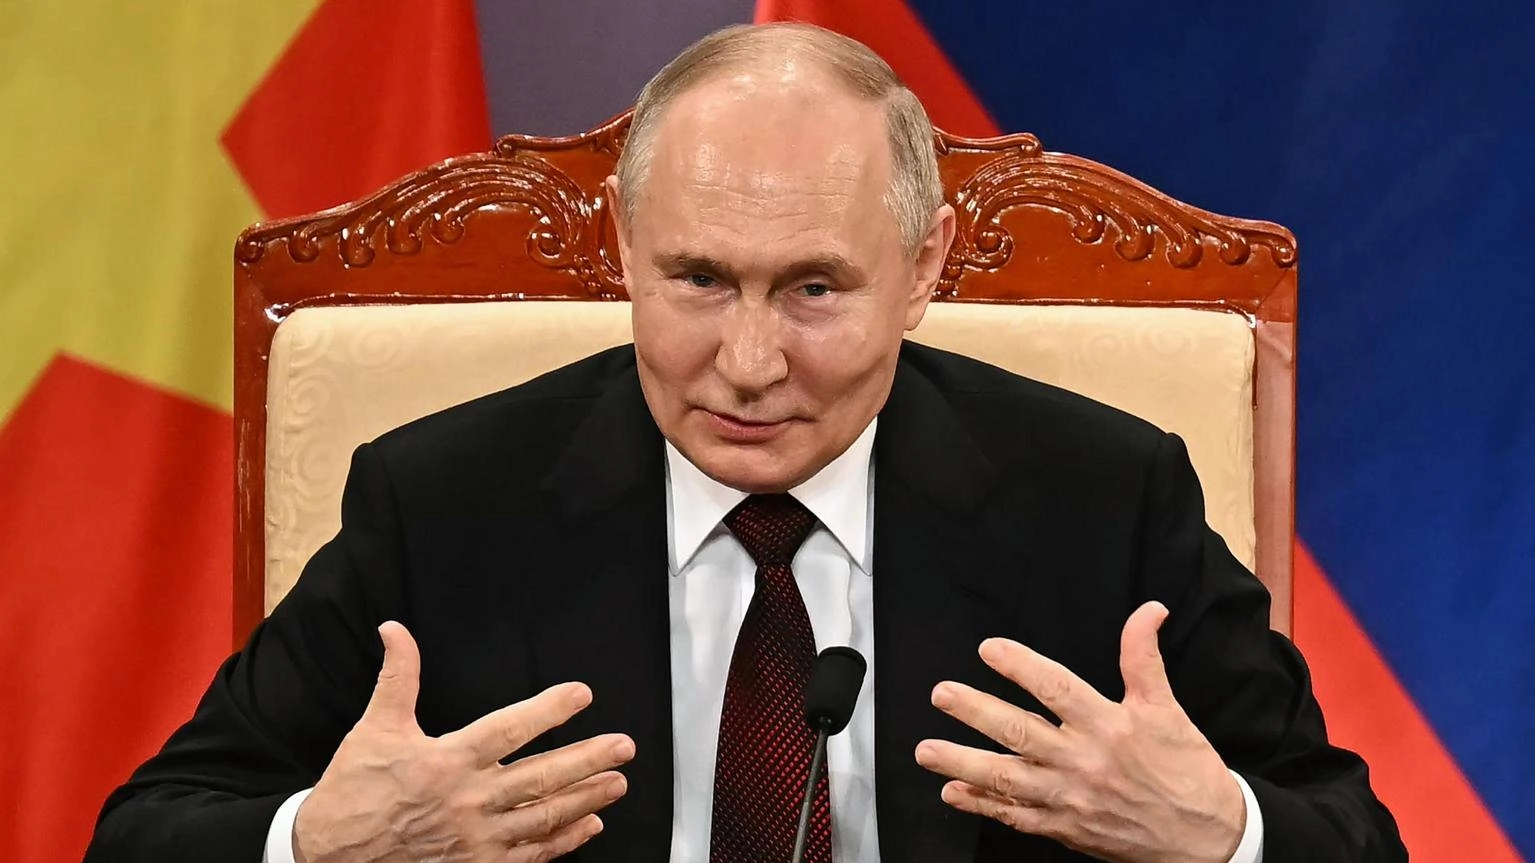 Putin, allo studio possibile revisione dottrina nucleare